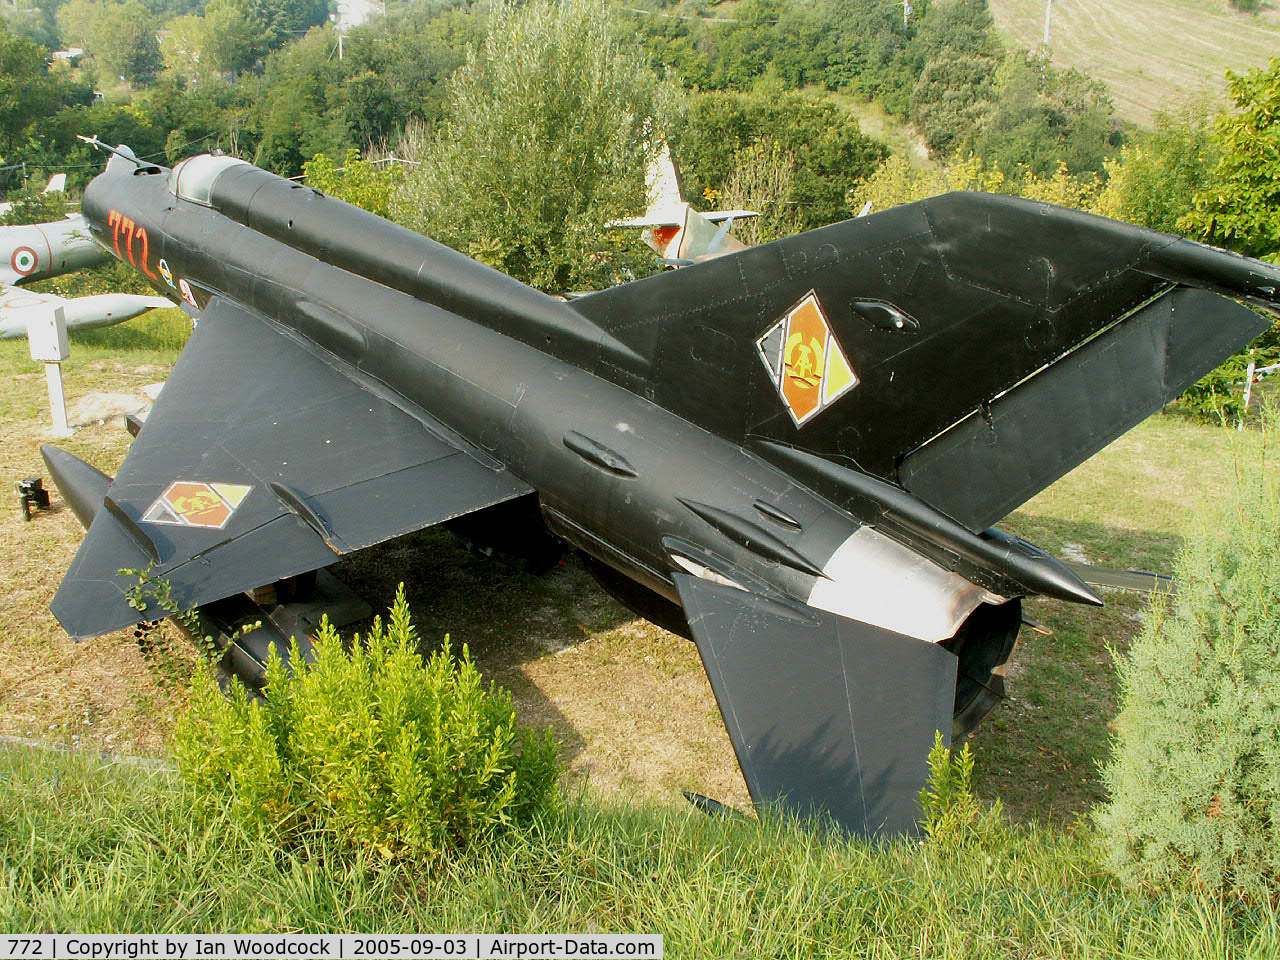 772, Mikoyan-Gurevich MiG-21bis C/N 96001039, MiG-21 (East German markings 772) Cerbaiola Italy